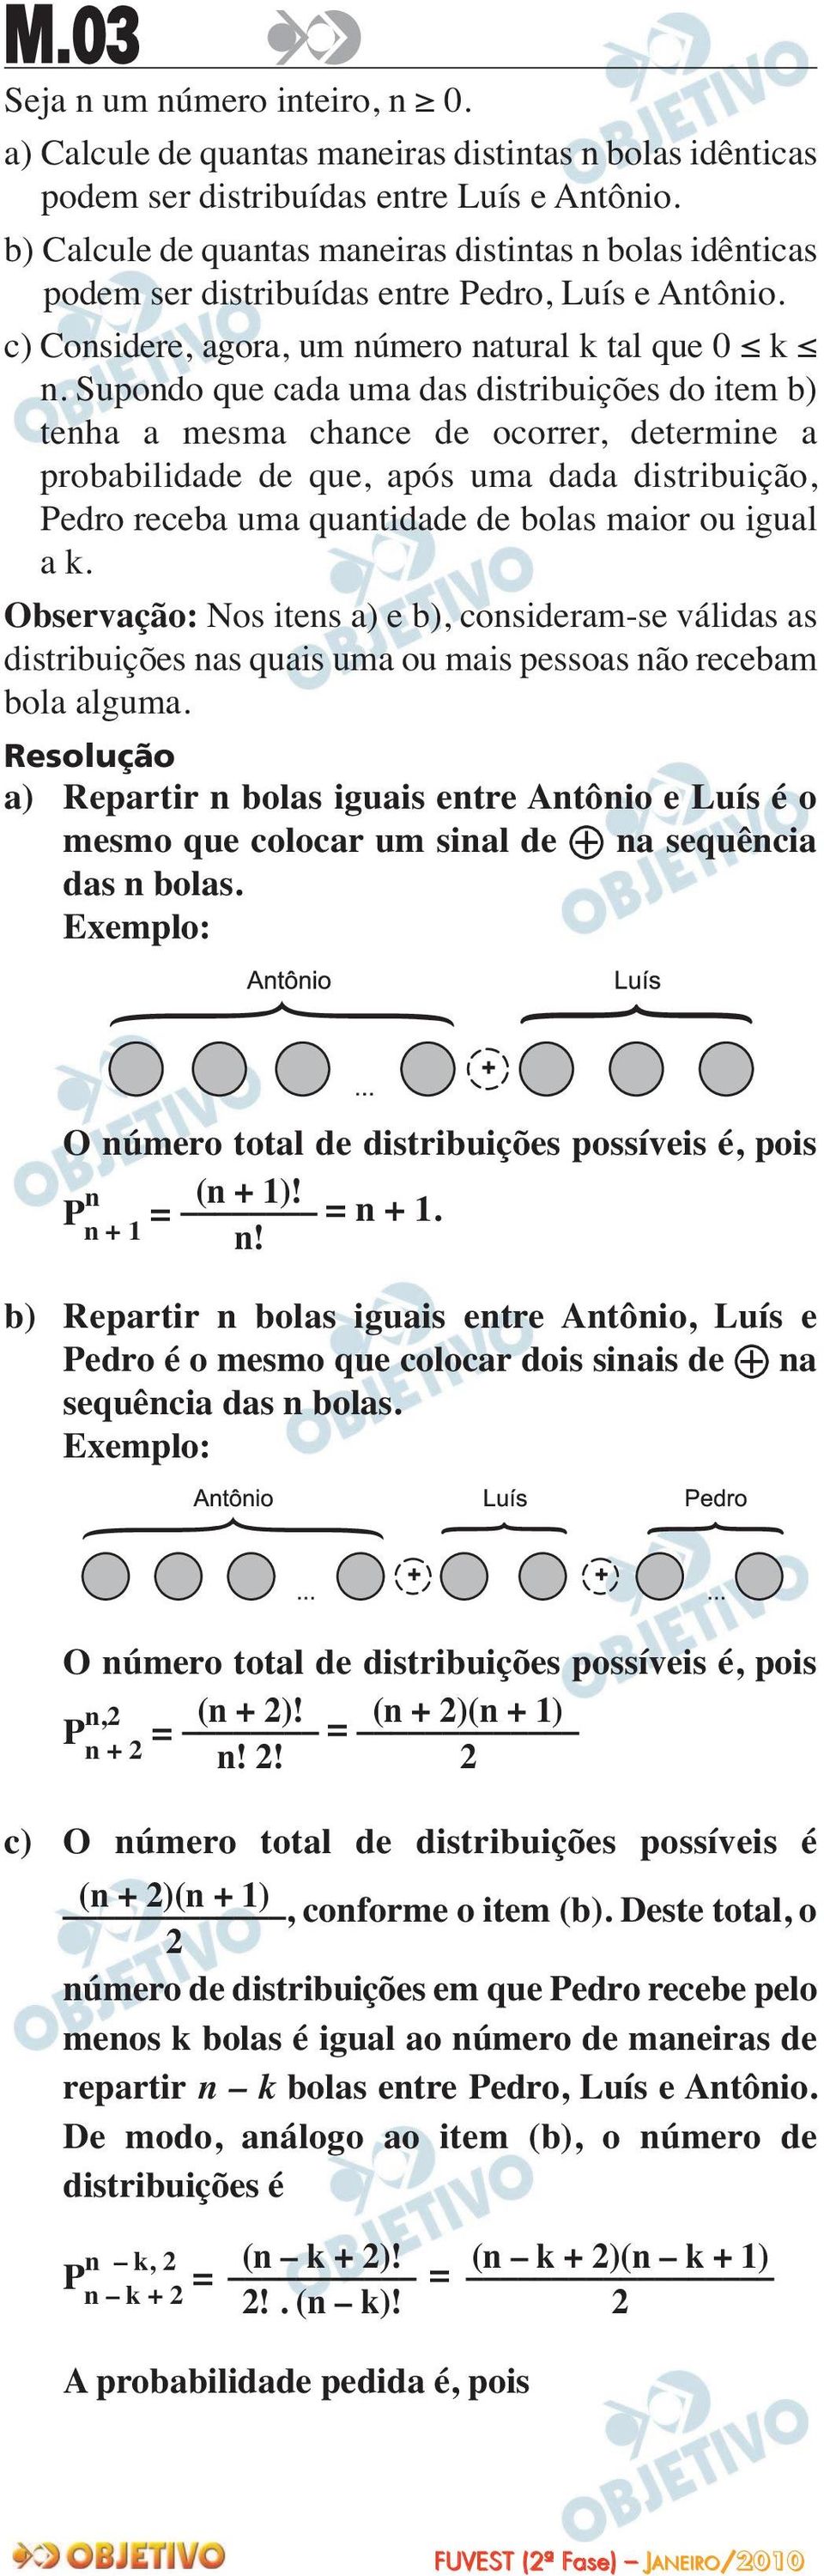 Supondo que cada uma das distribuições do item b) tenha a mesma chance de ocorrer, determine a probabilidade de que, após uma dada distribuição, Pedro receba uma quantidade de bolas maior ou igual a